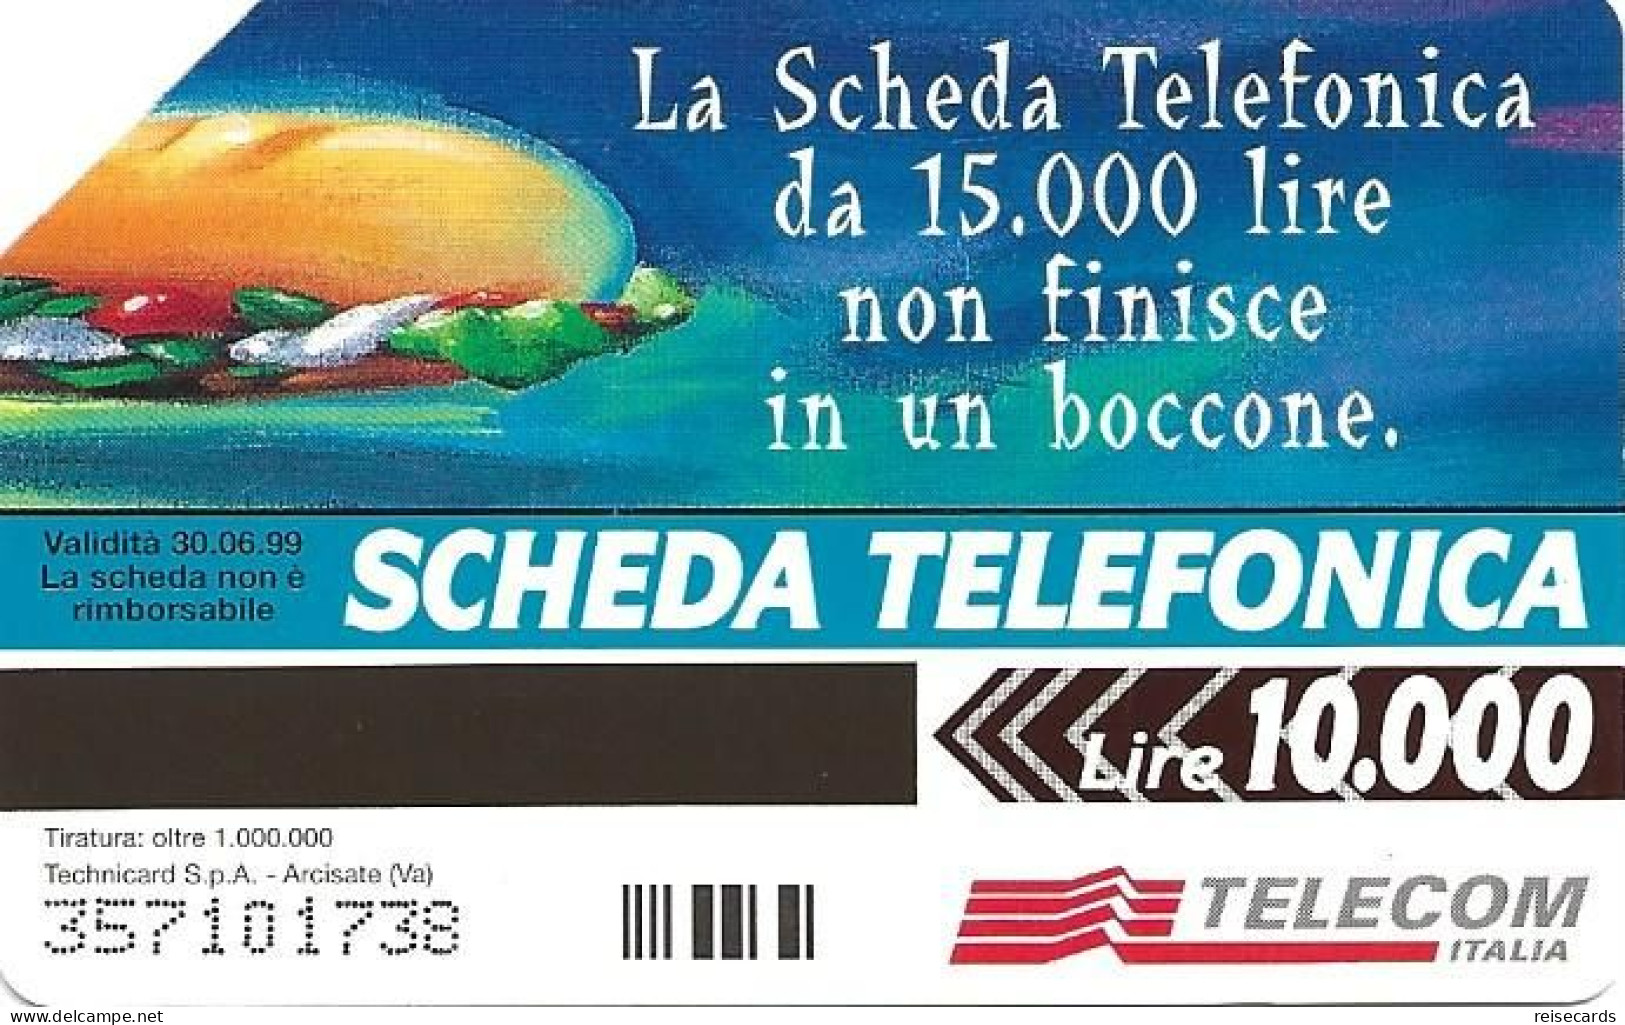 Italy: Telecom Italia - La Scheda Telefonica, Parlate Con Più Gusto (Tiratura: Oltre) - Publiques Publicitaires